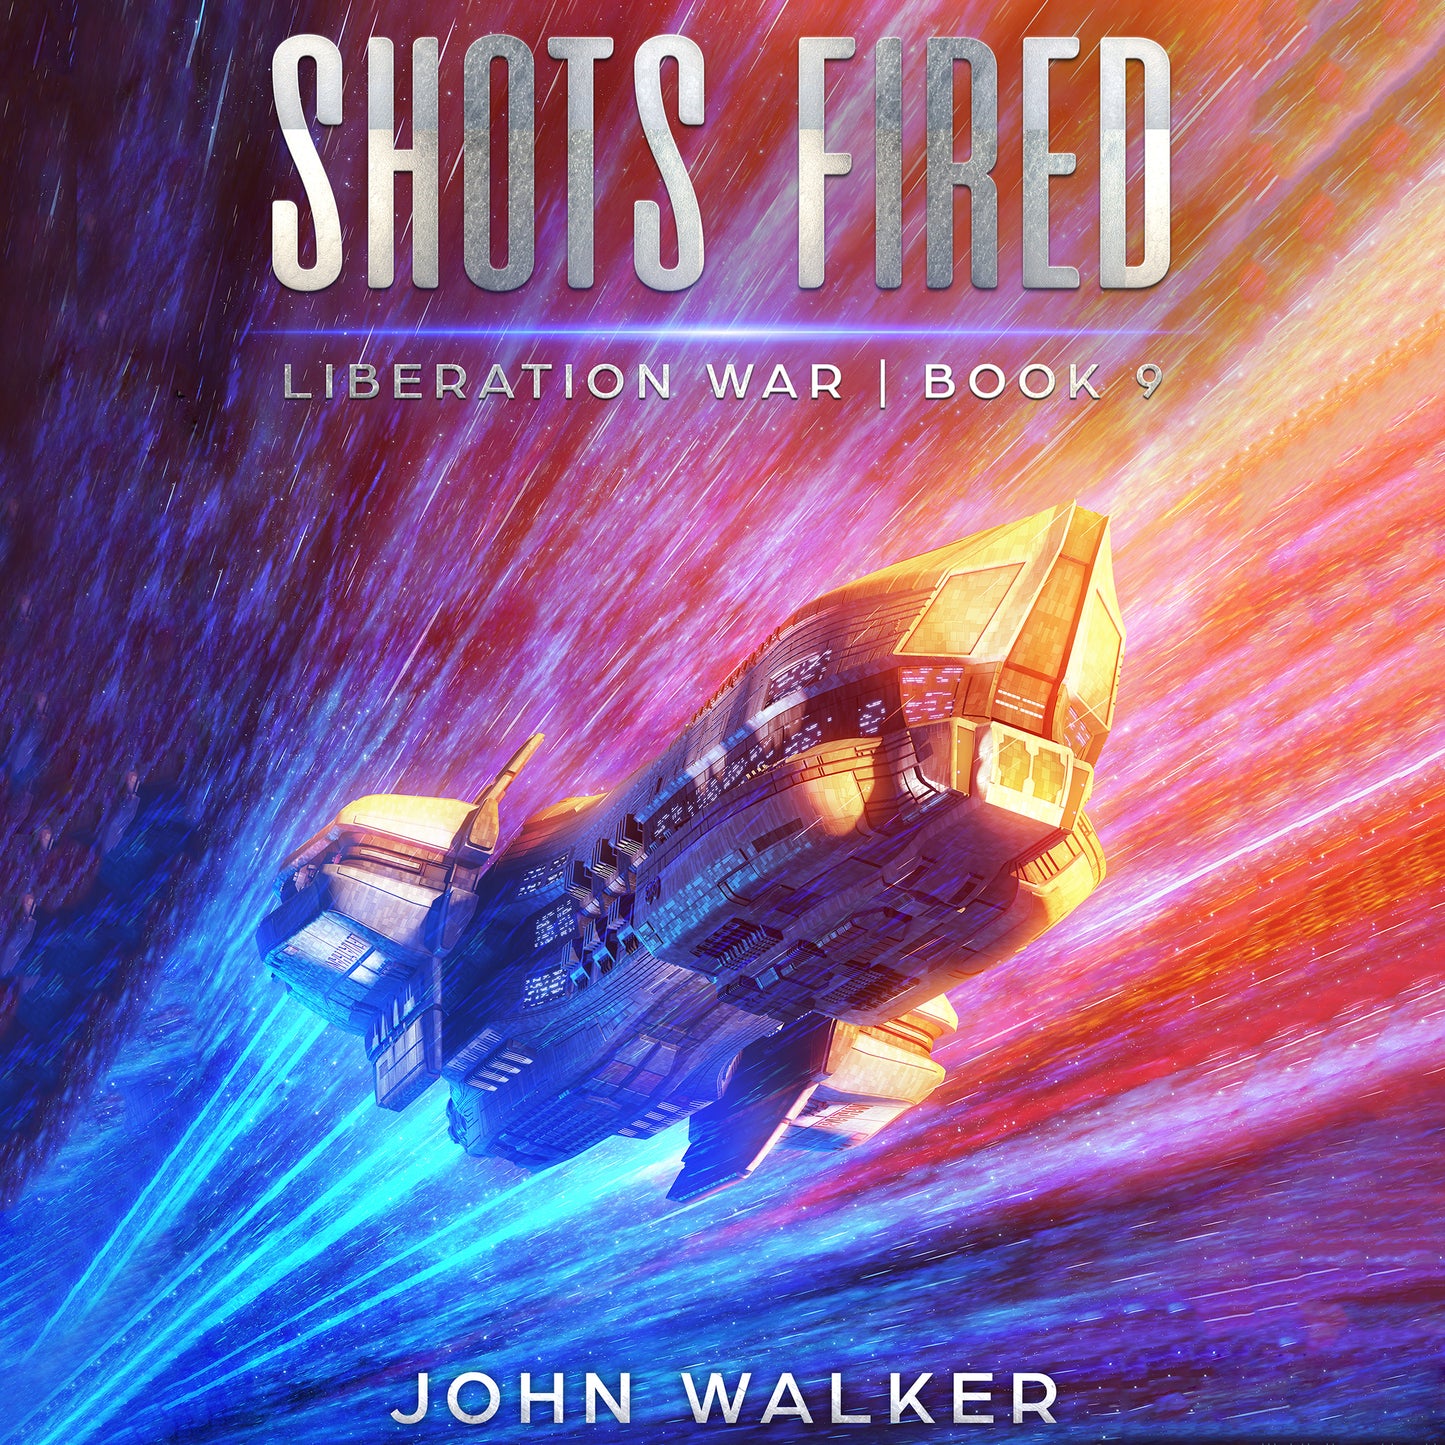 Shots Fired: Liberation War Book 9 Audiobook